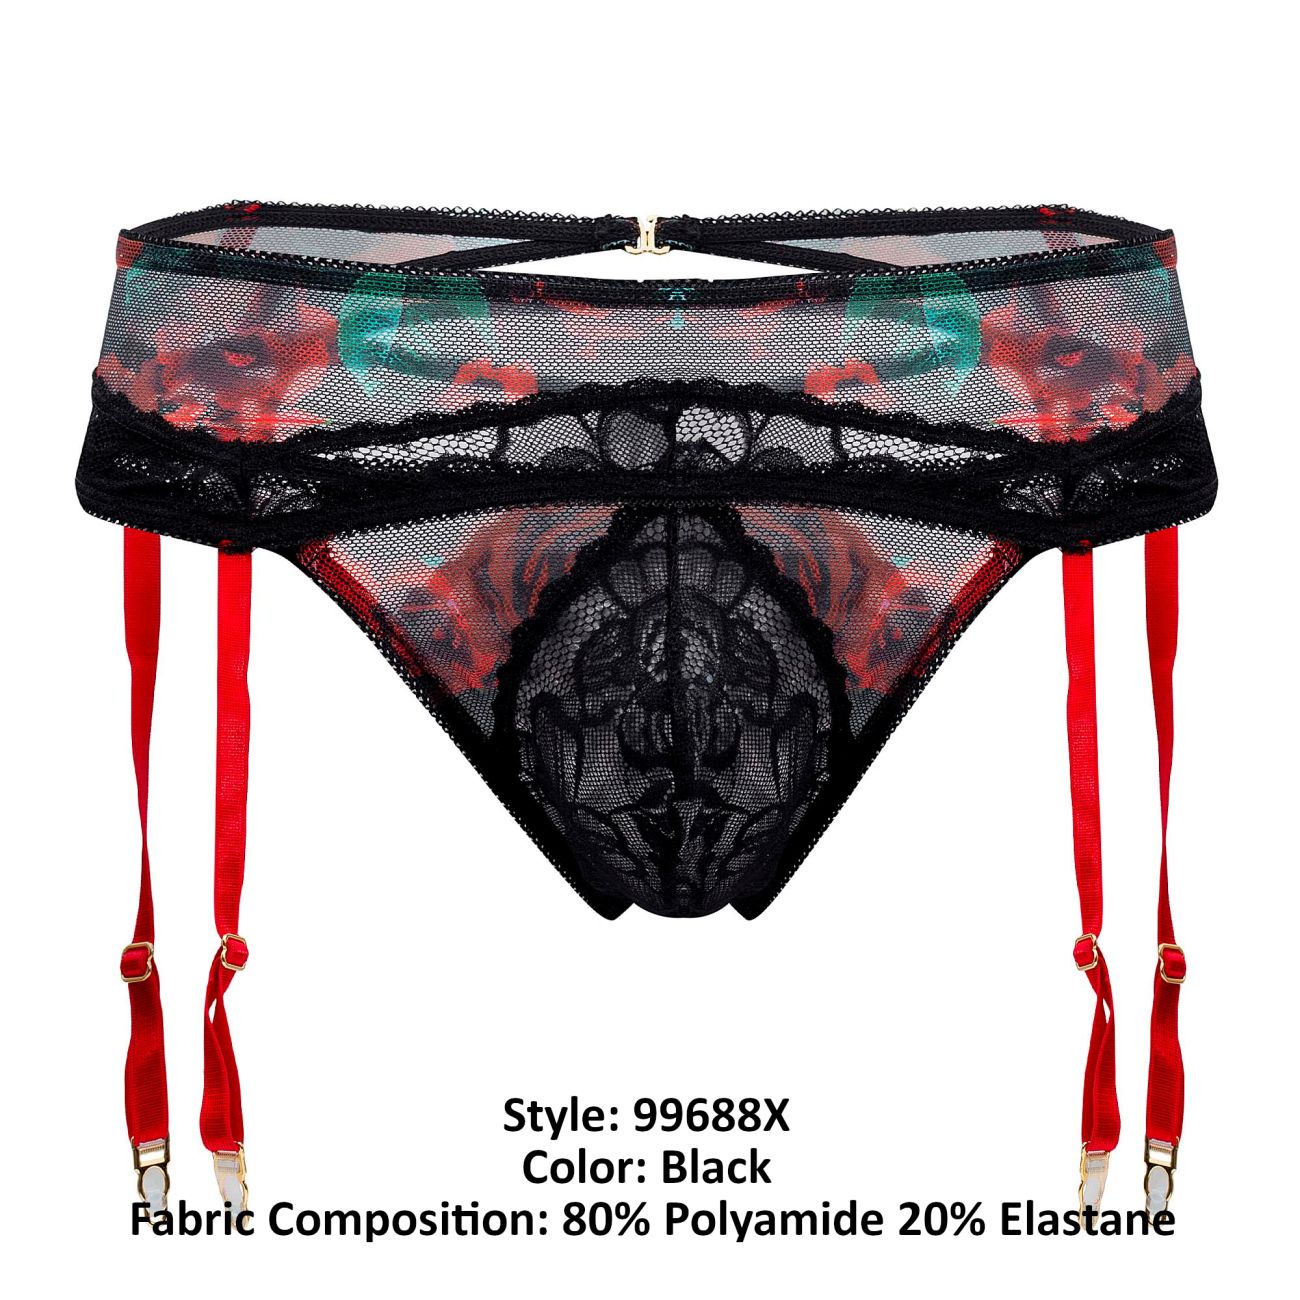 JCSTK - CandyMan 99688X Garter Thongs Two Piece Set Black Plus Sizes